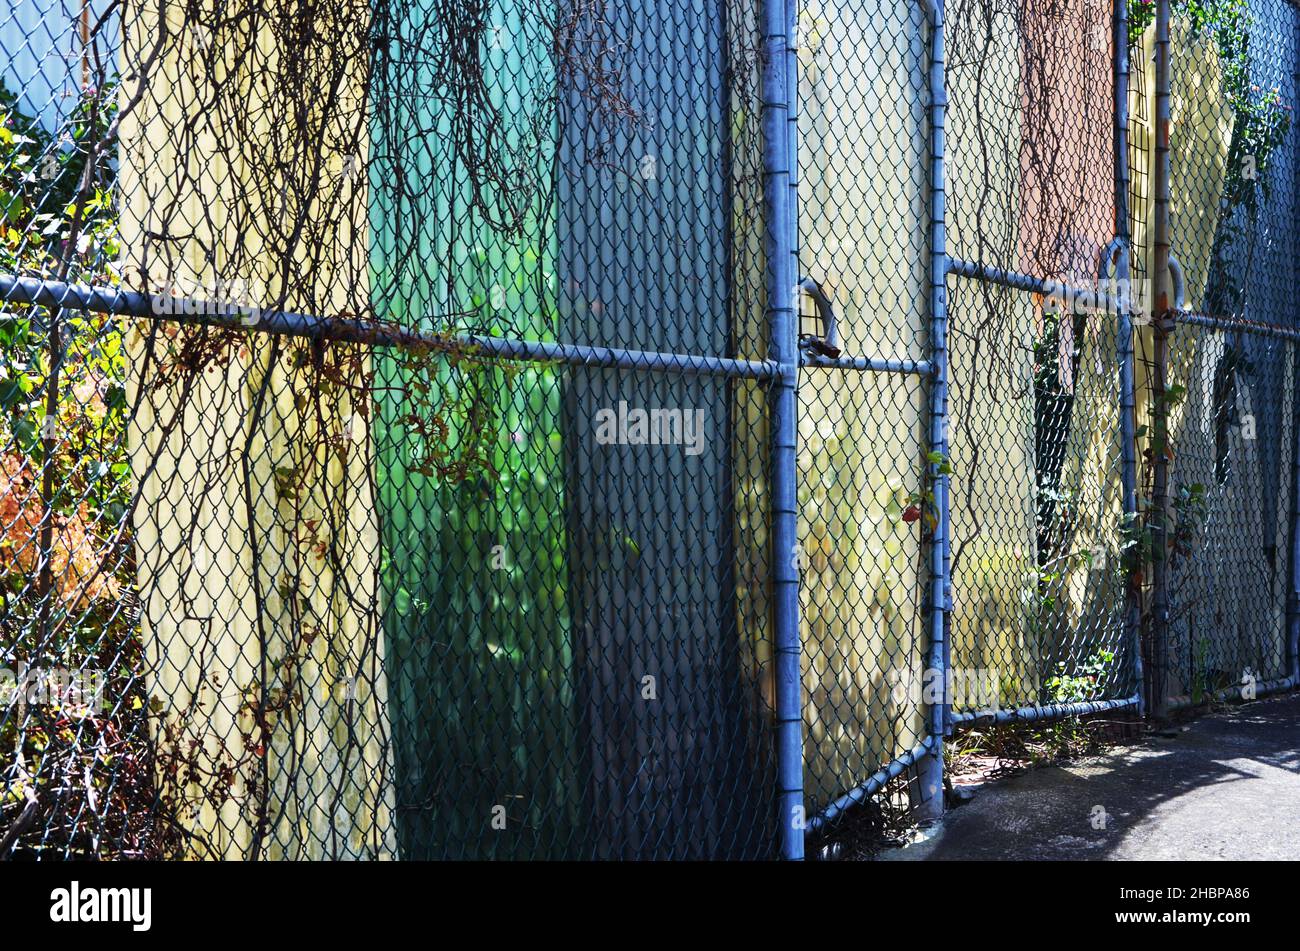 Des clôtures métalliques sur la rue restreignent l'accès Banque D'Images